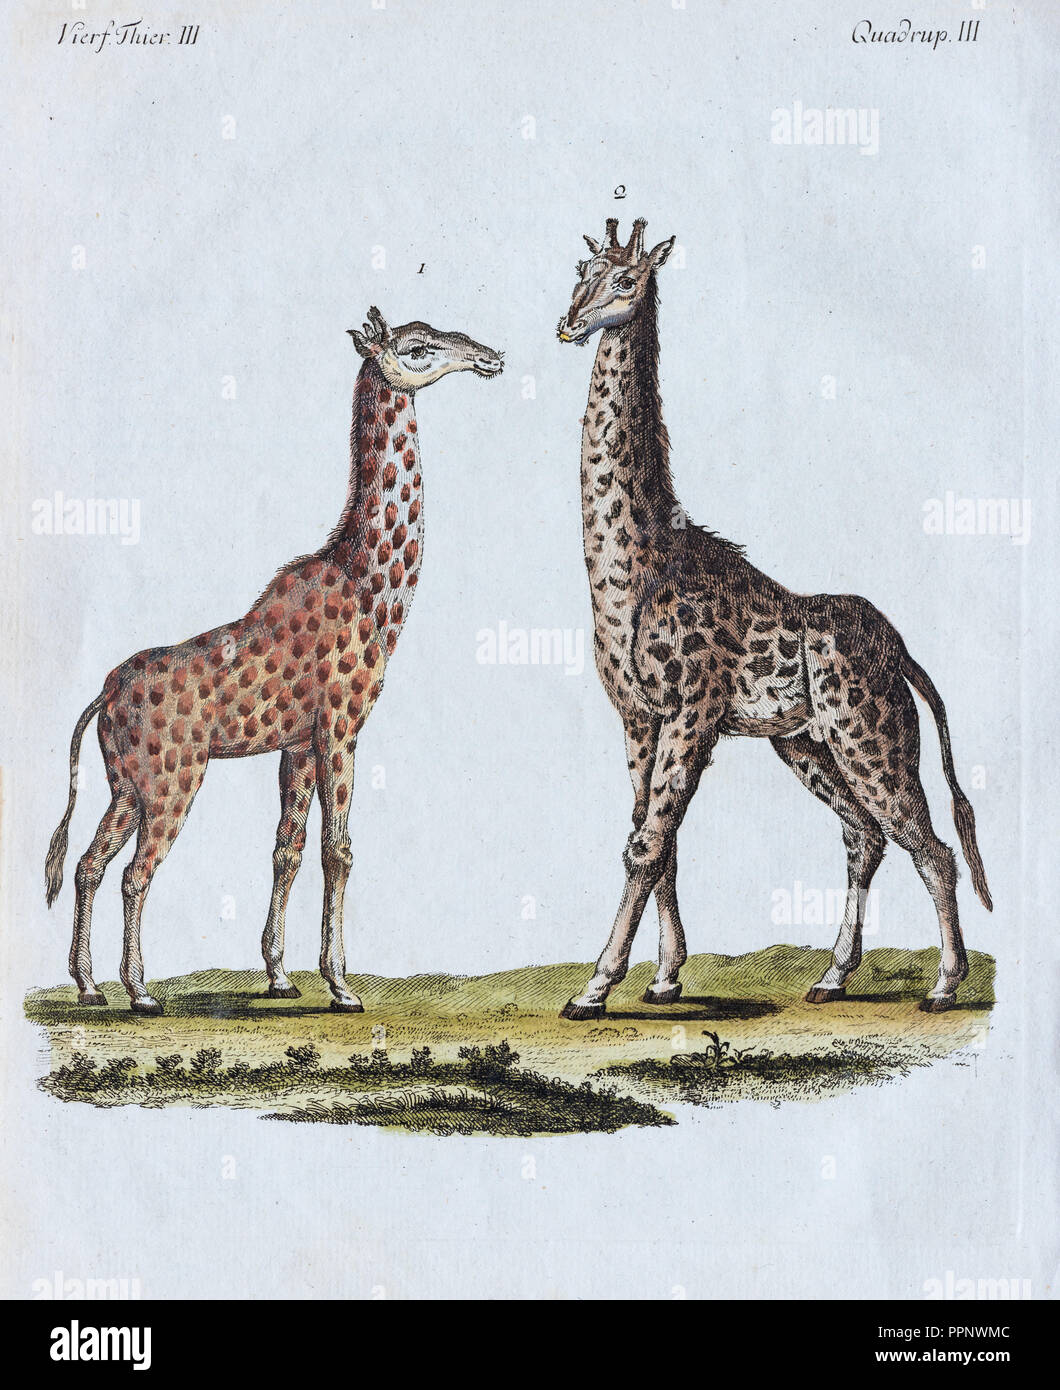 Les Girafes (Giraffa camelopardalis), à la main, gravure sur cuivre de Friedrich Justin Bertuch livre d'images pour enfants, 1801 Banque D'Images